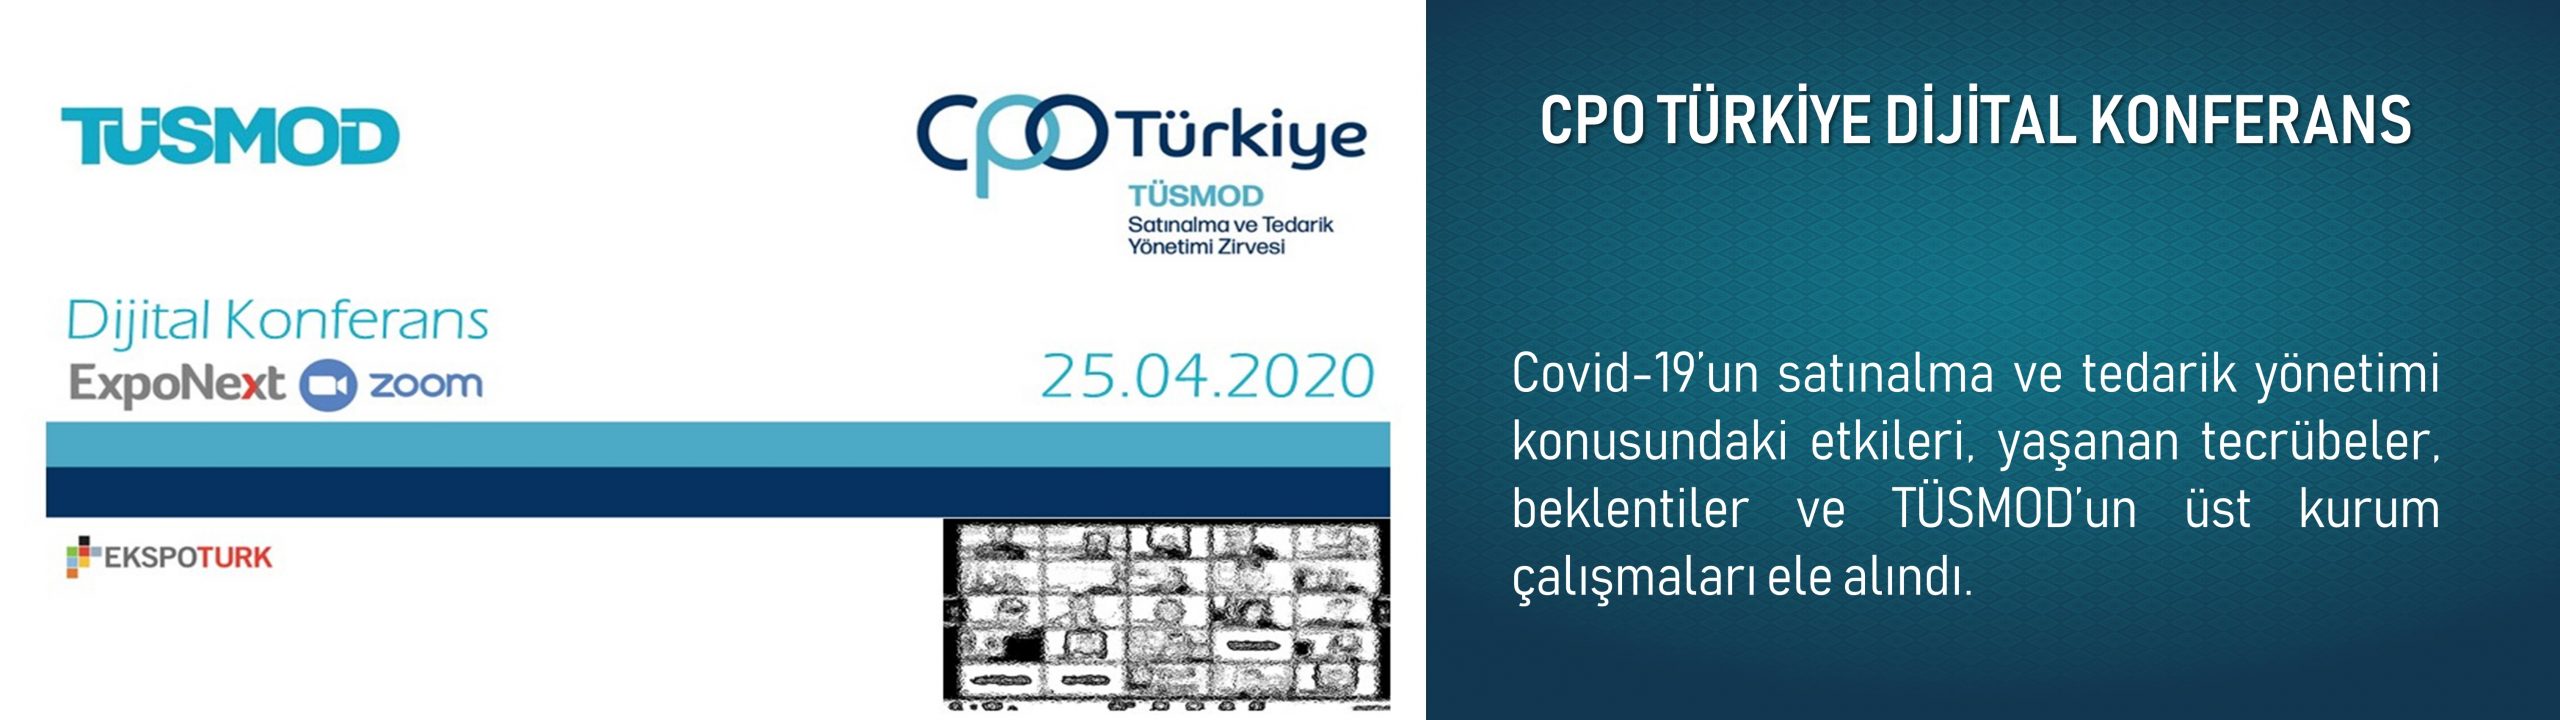 CPO Türkiye Dijital Konferans 1